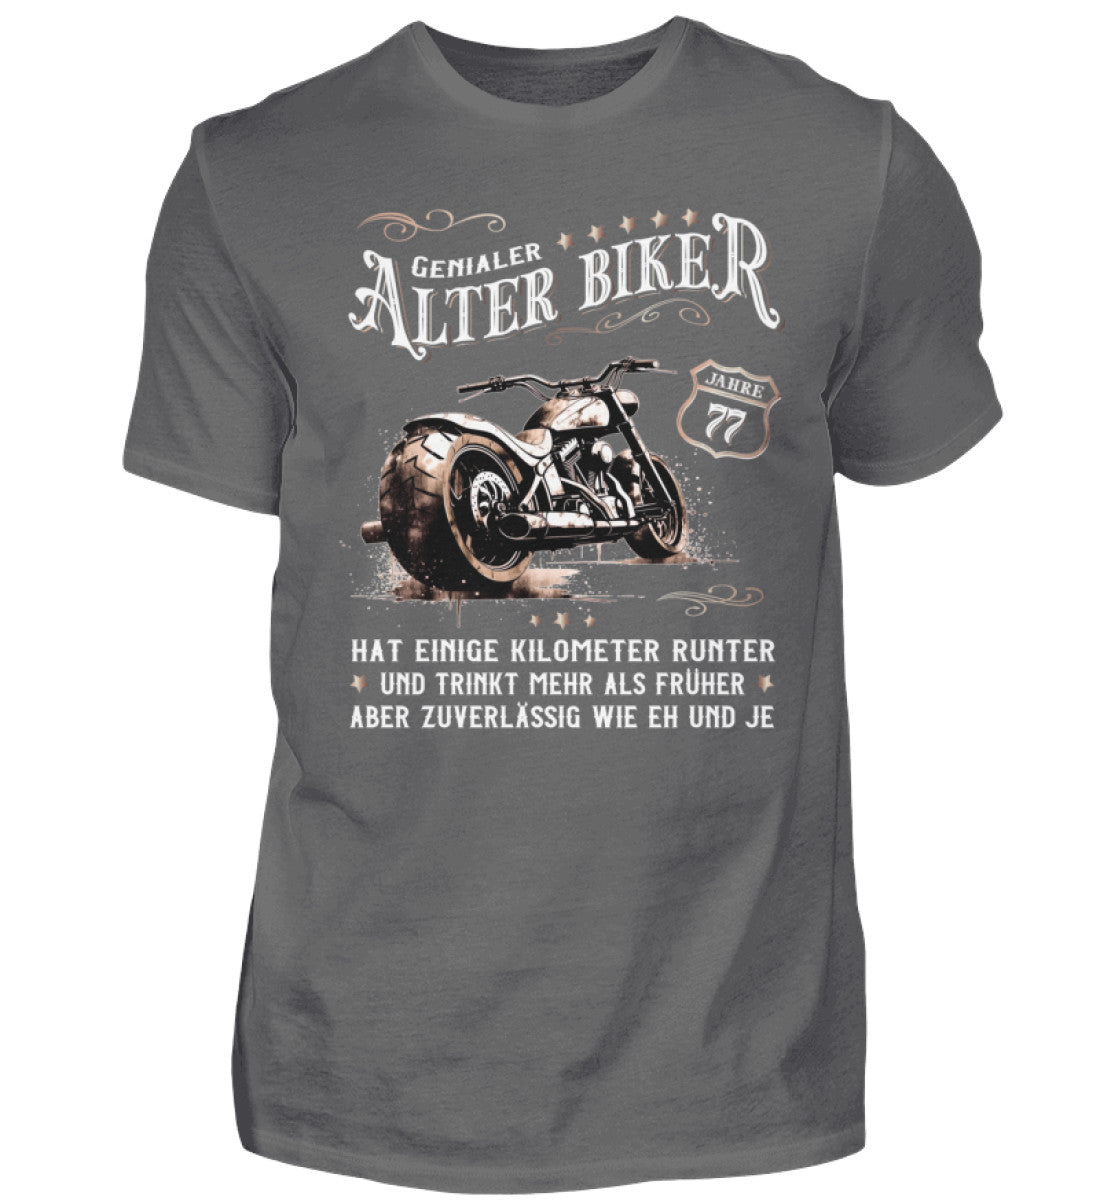 Ein Biker T-Shirt zum Geburtstag für Motorradfahrer von Wingbikers mit dem Aufdruck, Alter Biker - 77 Jahre - Einige Kilometer runter, trinkt mehr - aber zuverlässig wie eh und je - in grau.